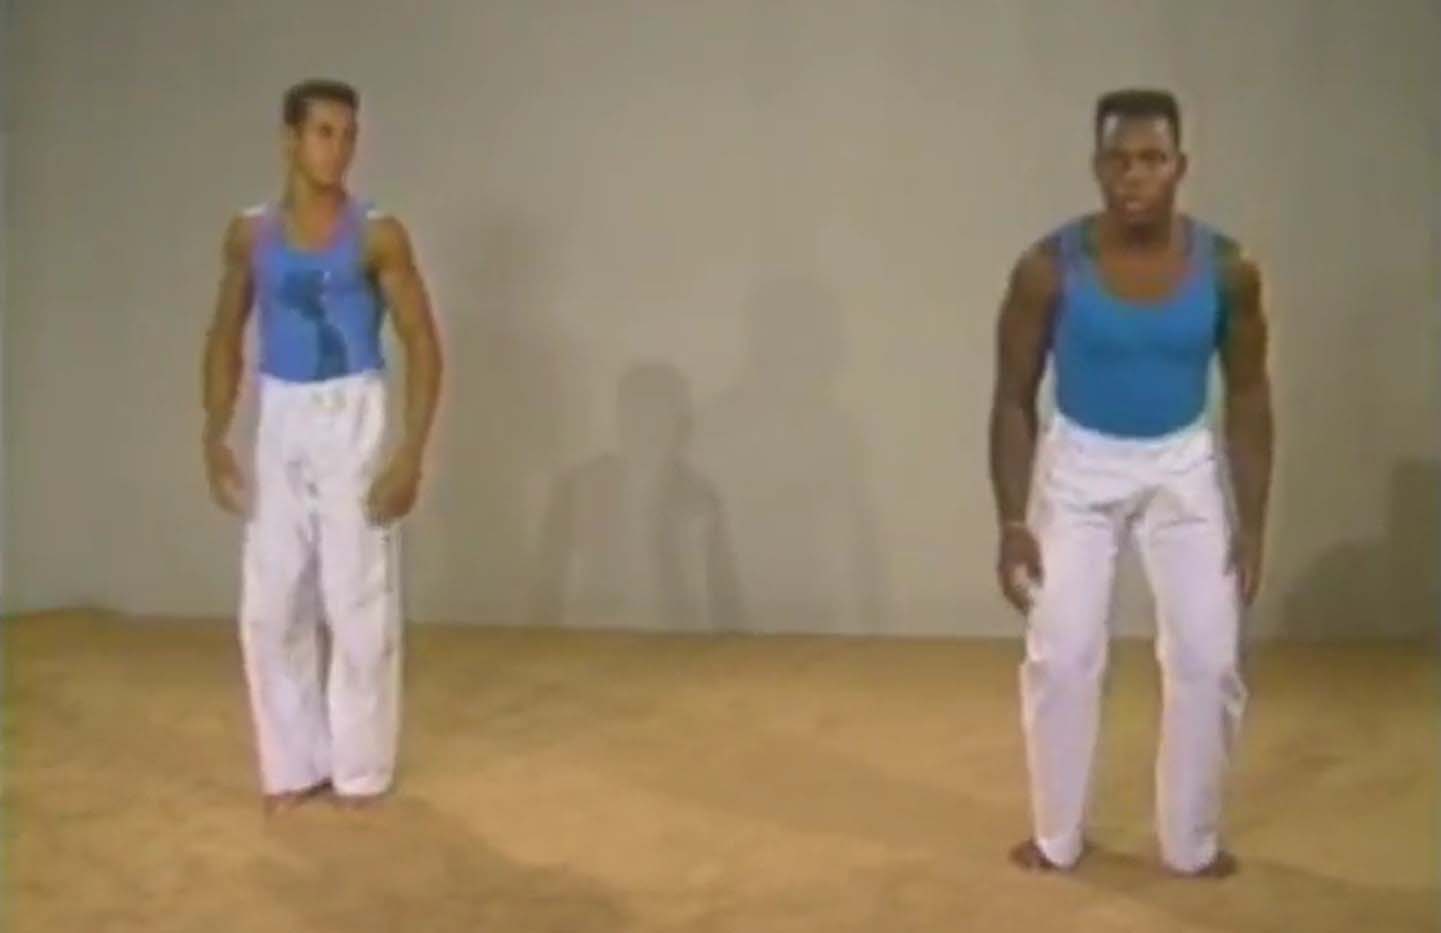 آموزش کامل کاپویرا - هنر رزمی برزیل - تمرینات گرم کردن، کشش و تقویتی